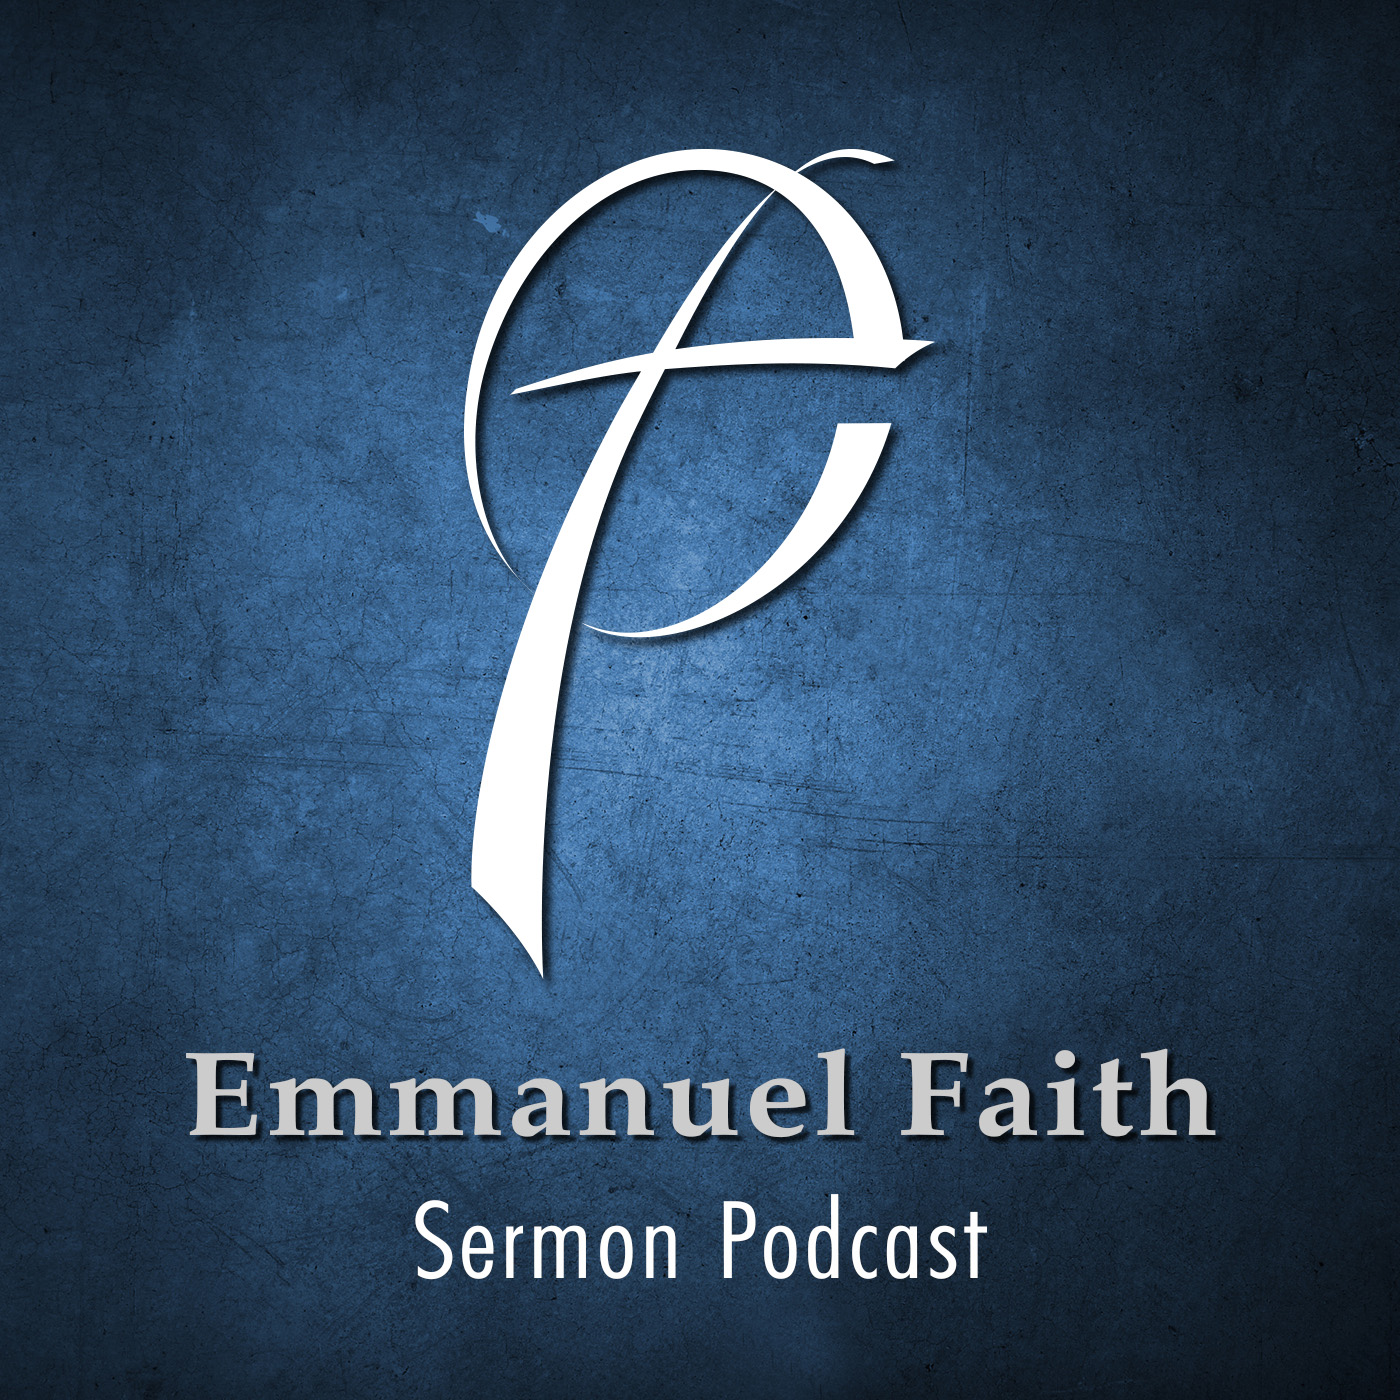 Emmanuel Faith Sermon Podcast